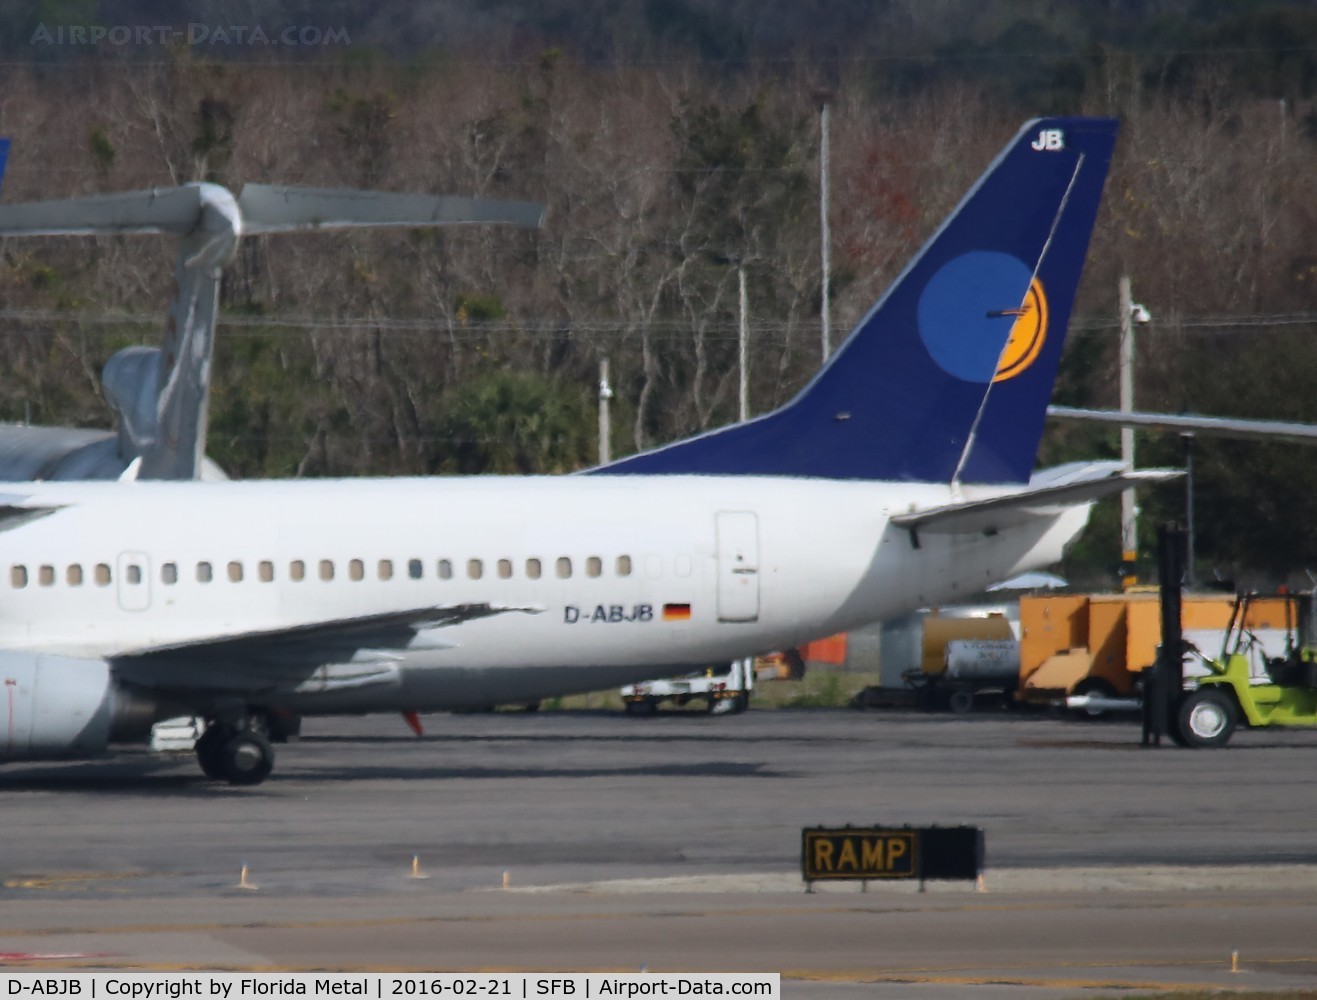 D-ABJB, 1991 Boeing 737-530 C/N 25271, Lufthansa 737-500